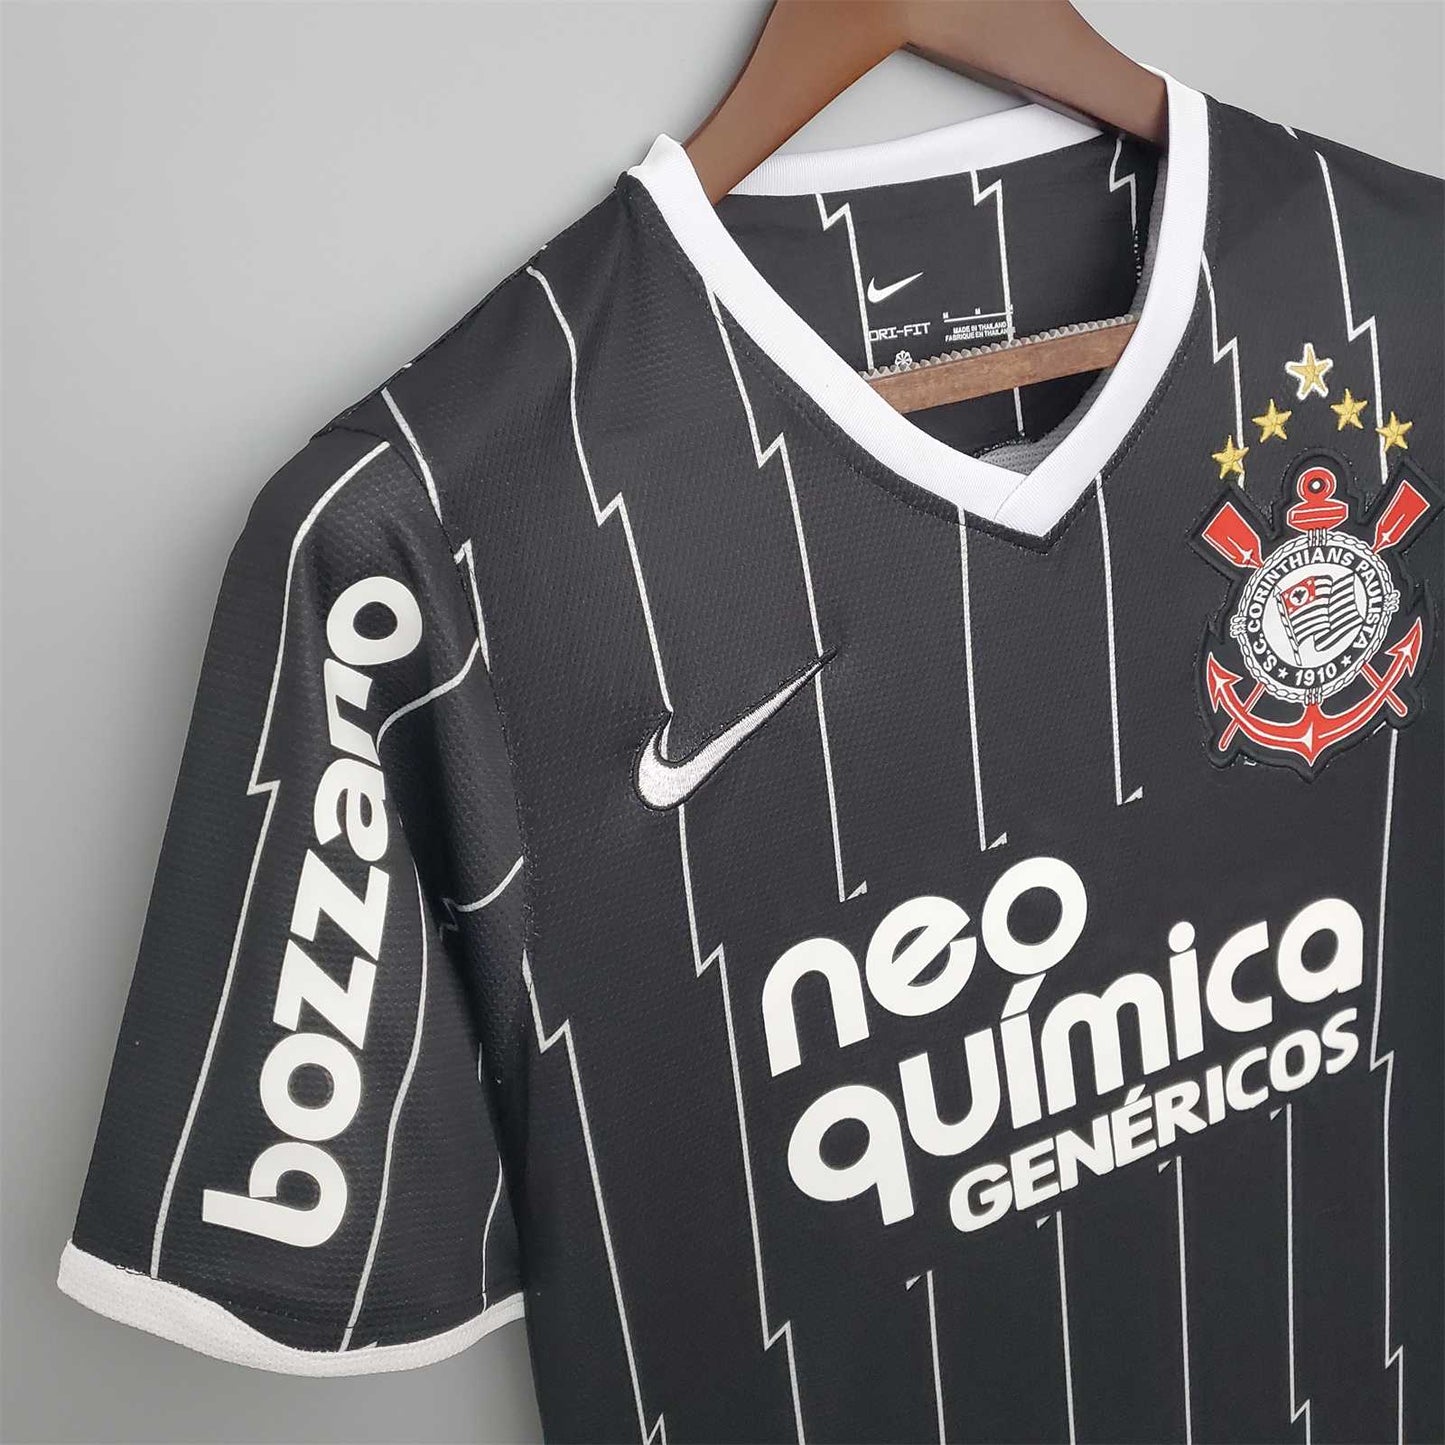 Corinthians. Camiseta visitante 2011-2012